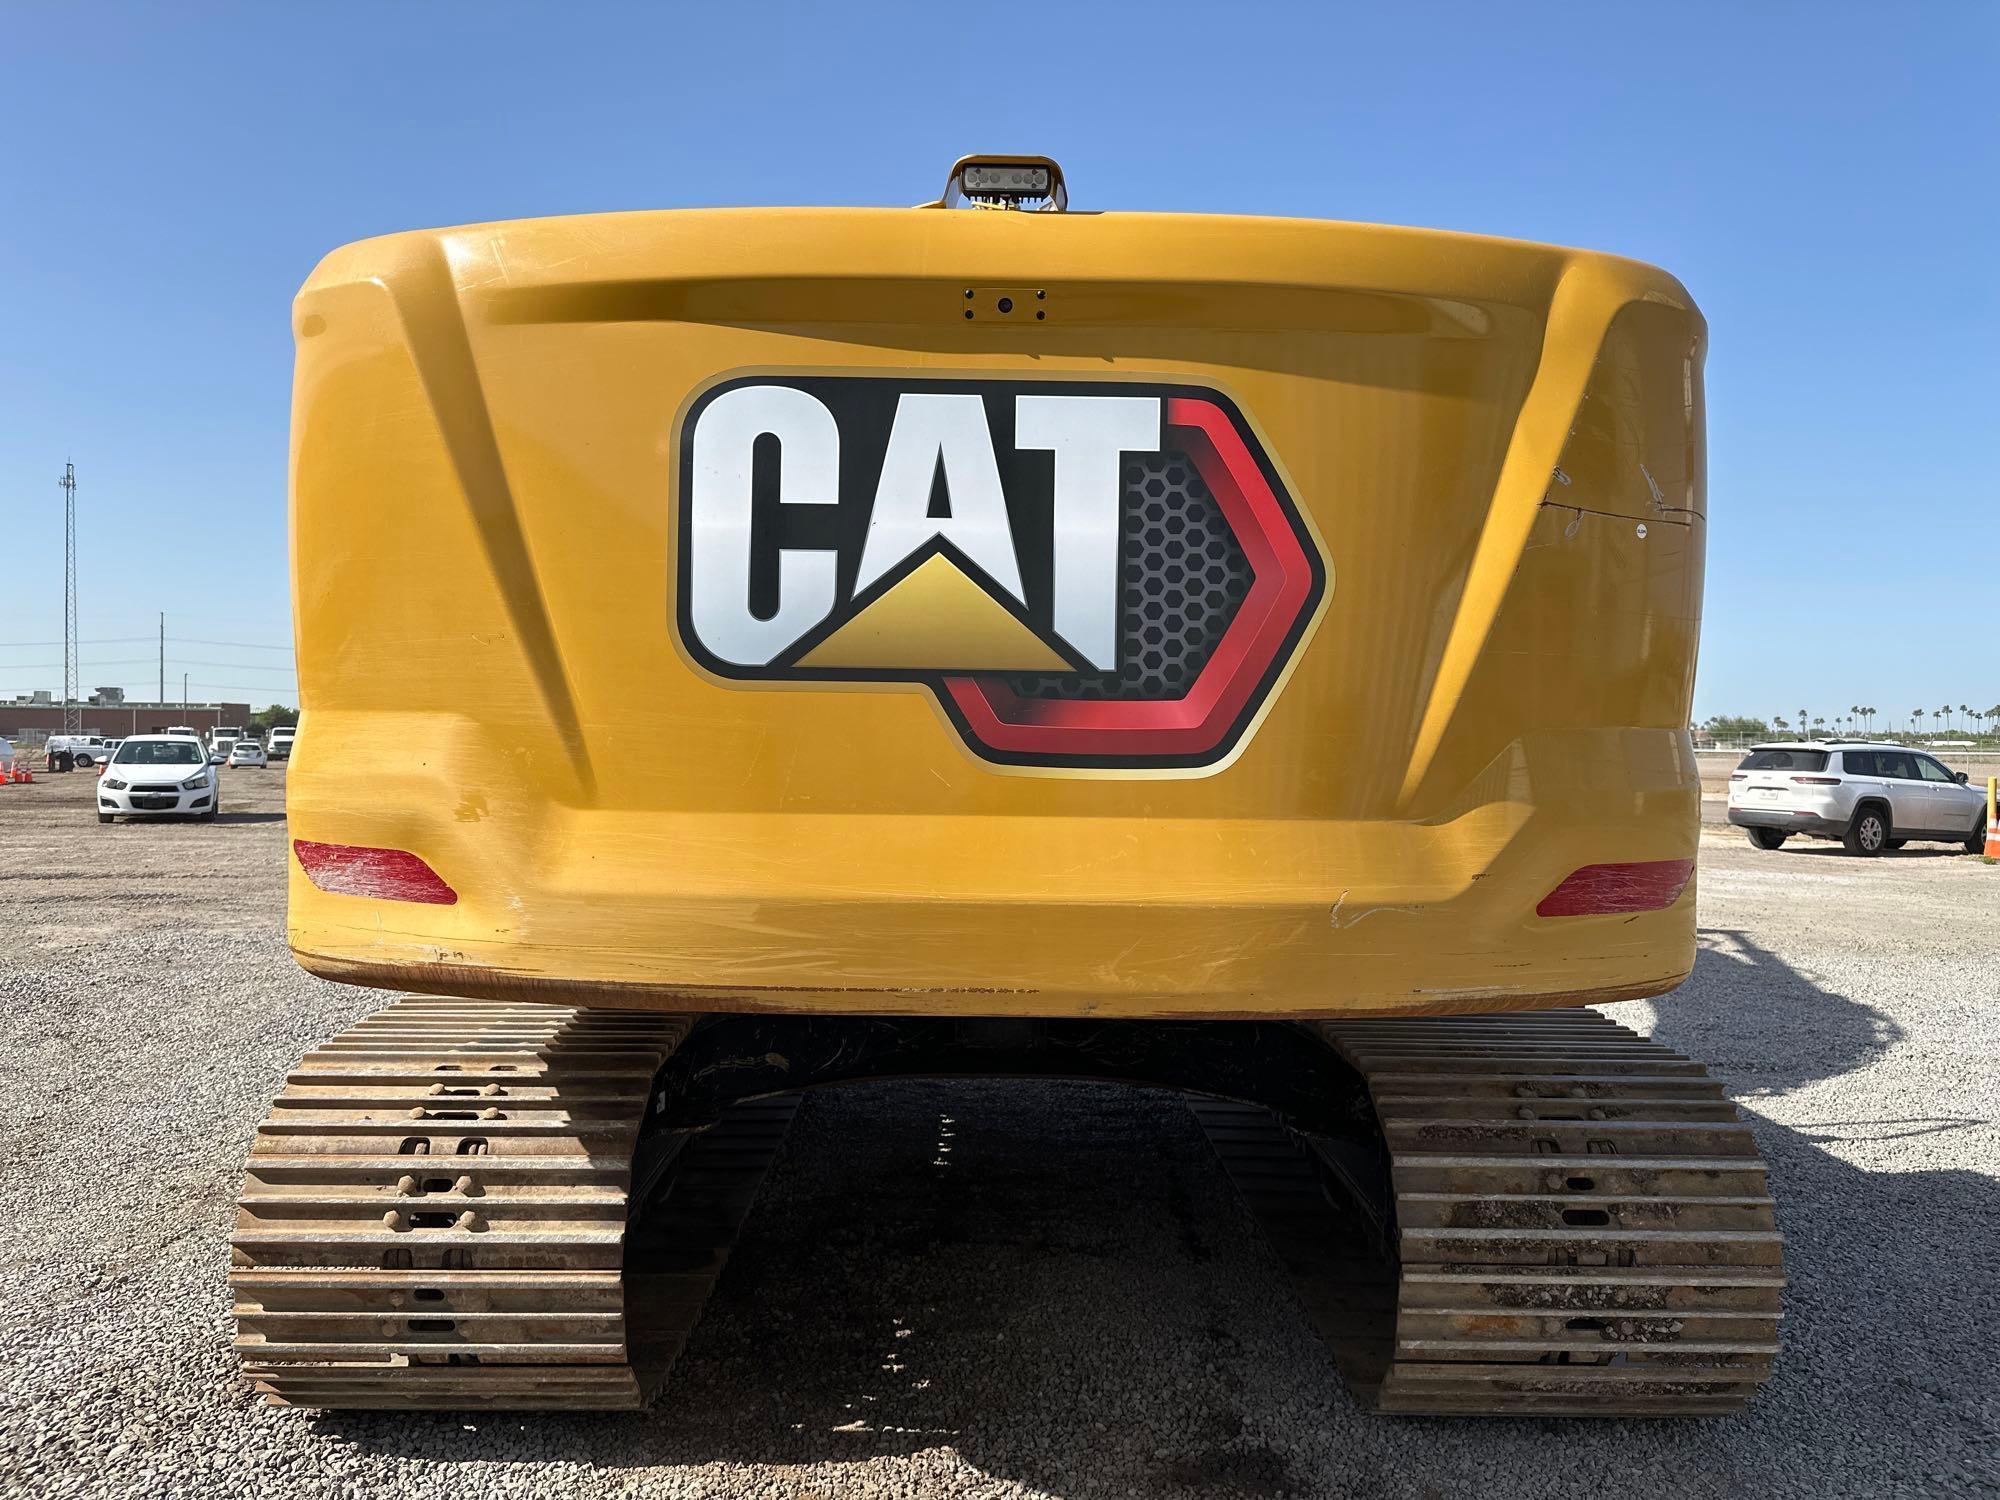 2021 Caterpillar 320 Next Gen Hydraulic Excavator